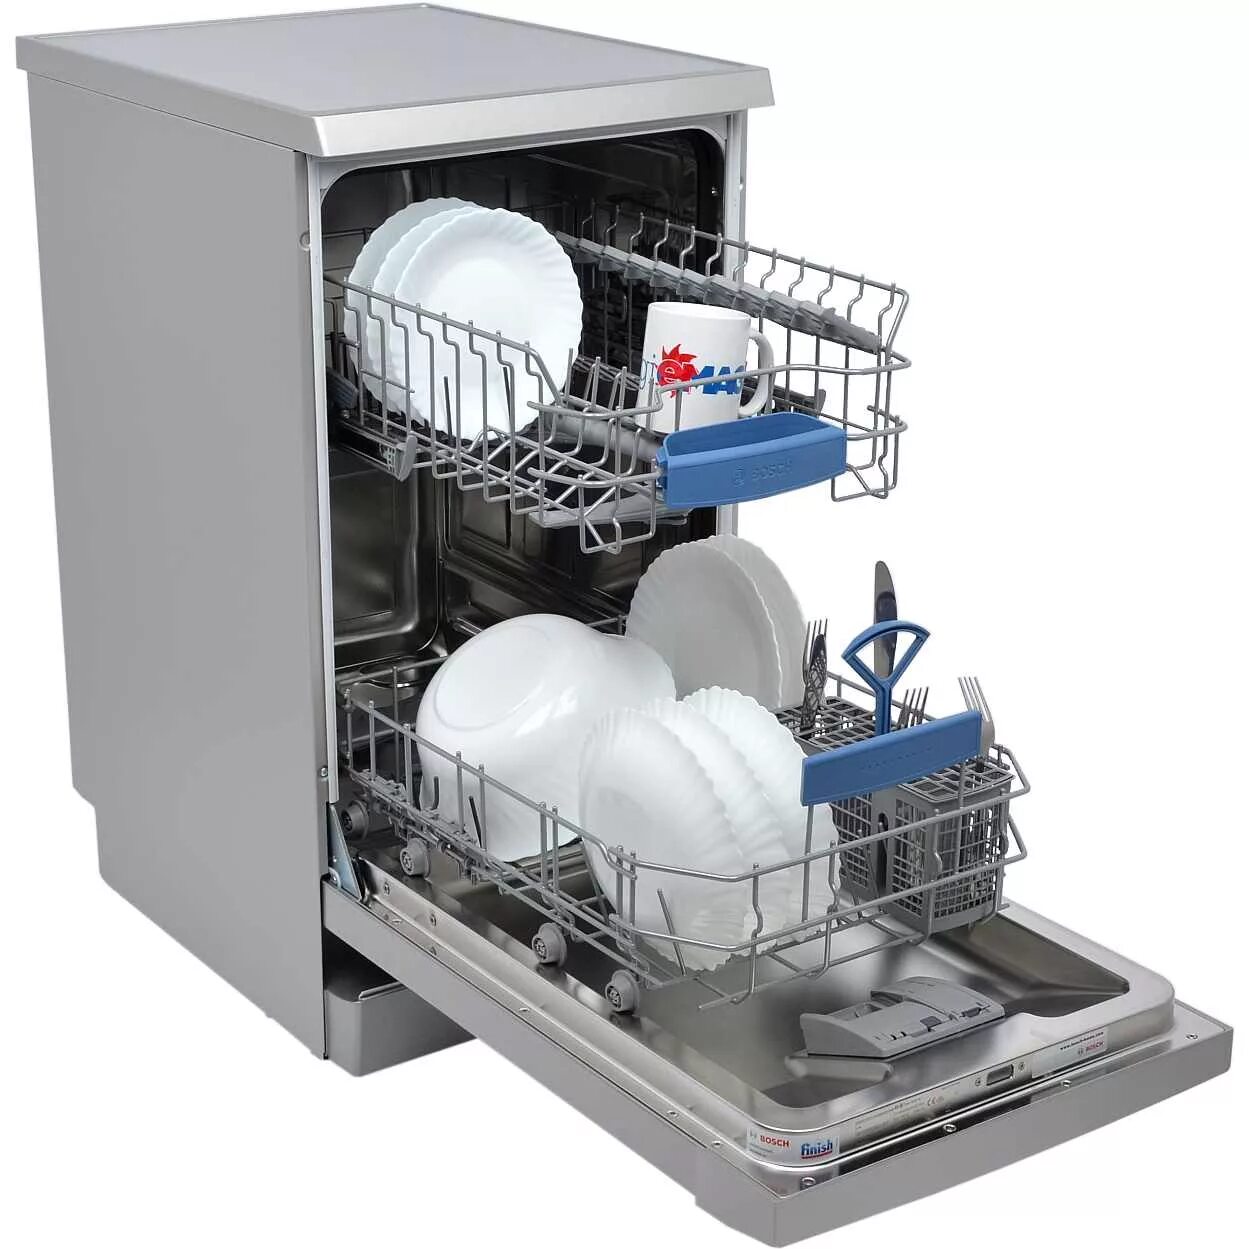 Детали посудомоечной машины. Посудомоечная машина Bosch sps2ikw1br. Посудомоечная машина Neff s855hmx50r. ПММ бош sps53. Посудомоечная машина Bosch spv6hmx1mr.